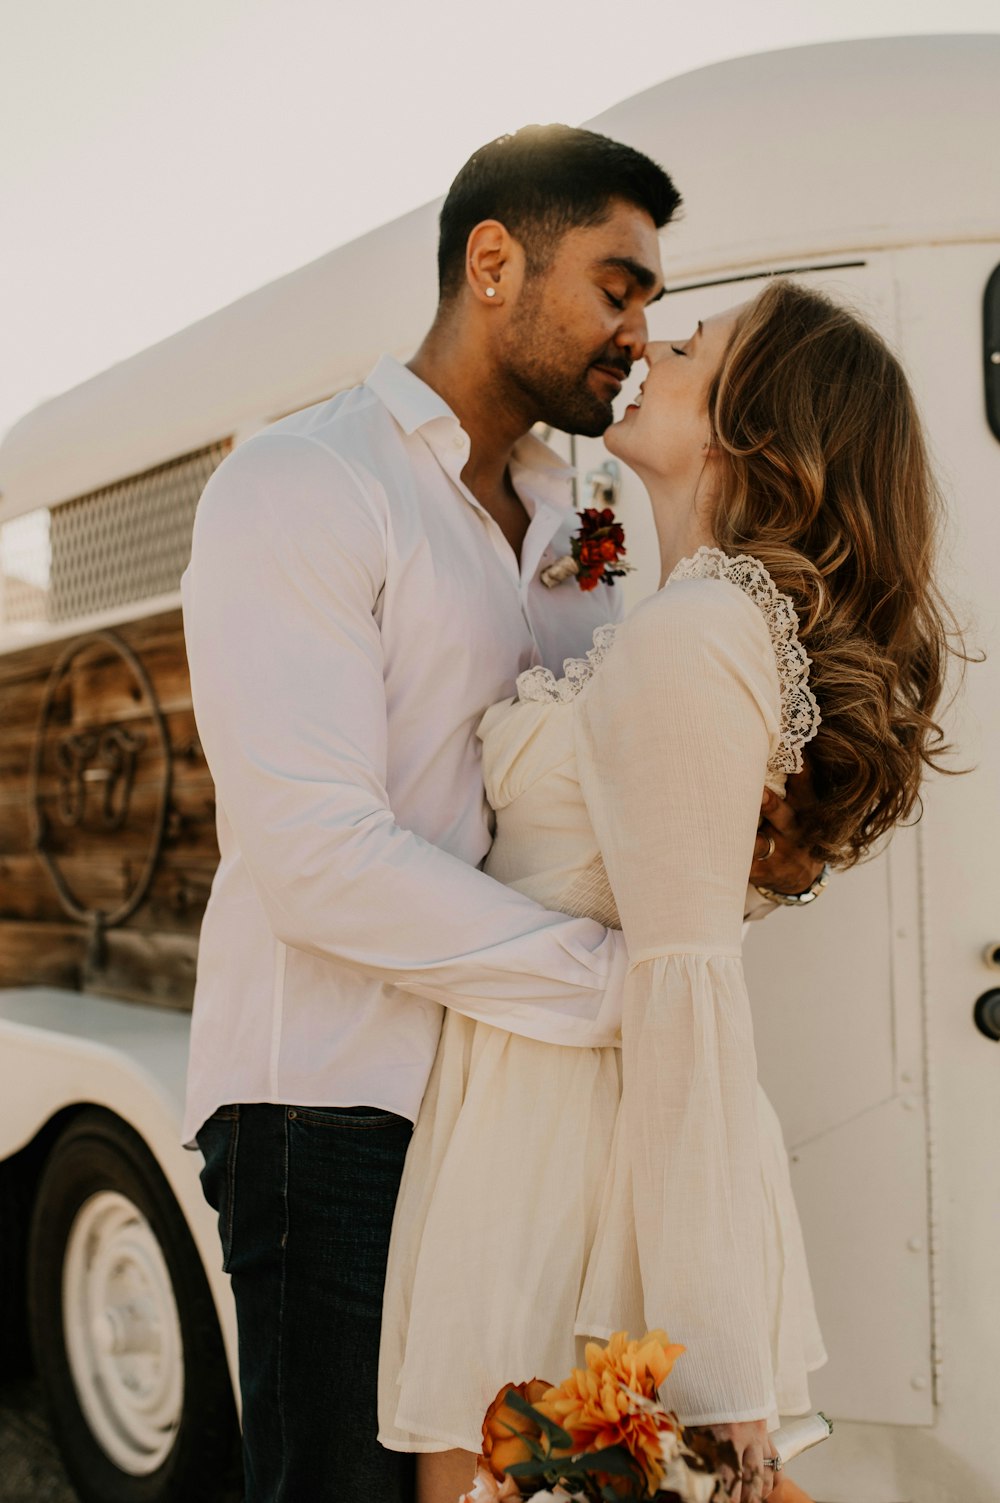 Un homme et une femme s’embrassent devant un camion